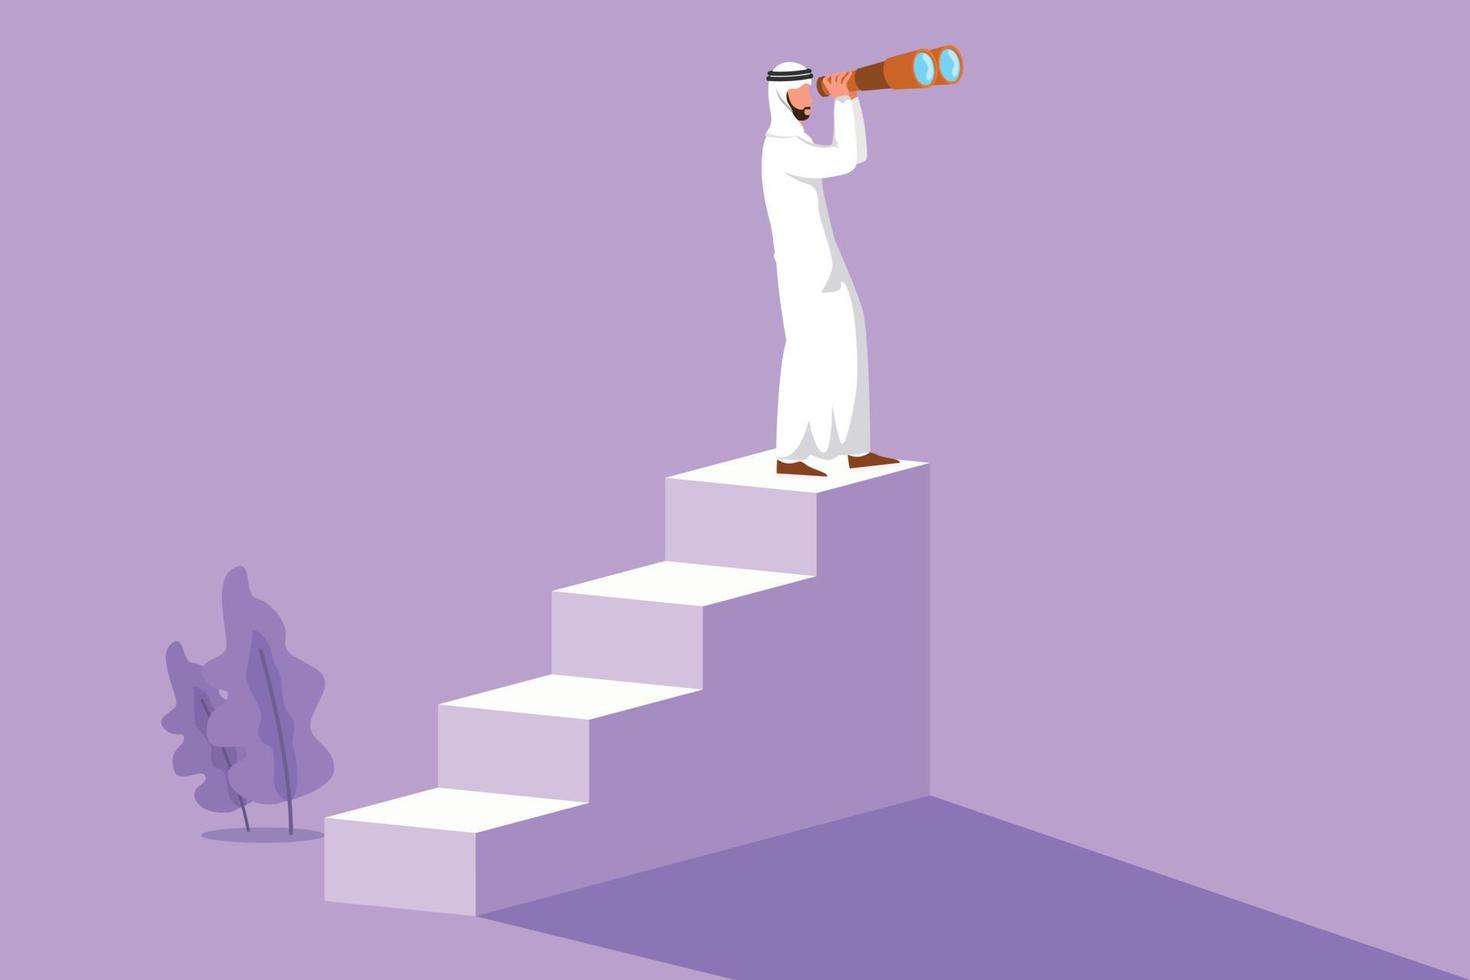 design plat graphique dessin homme d'affaires arabe debout dans les escaliers avec des jumelles. concept de vision dans les affaires. symbole de leadership, stratégie, mission, objectifs. illustration vectorielle de style dessin animé vecteur